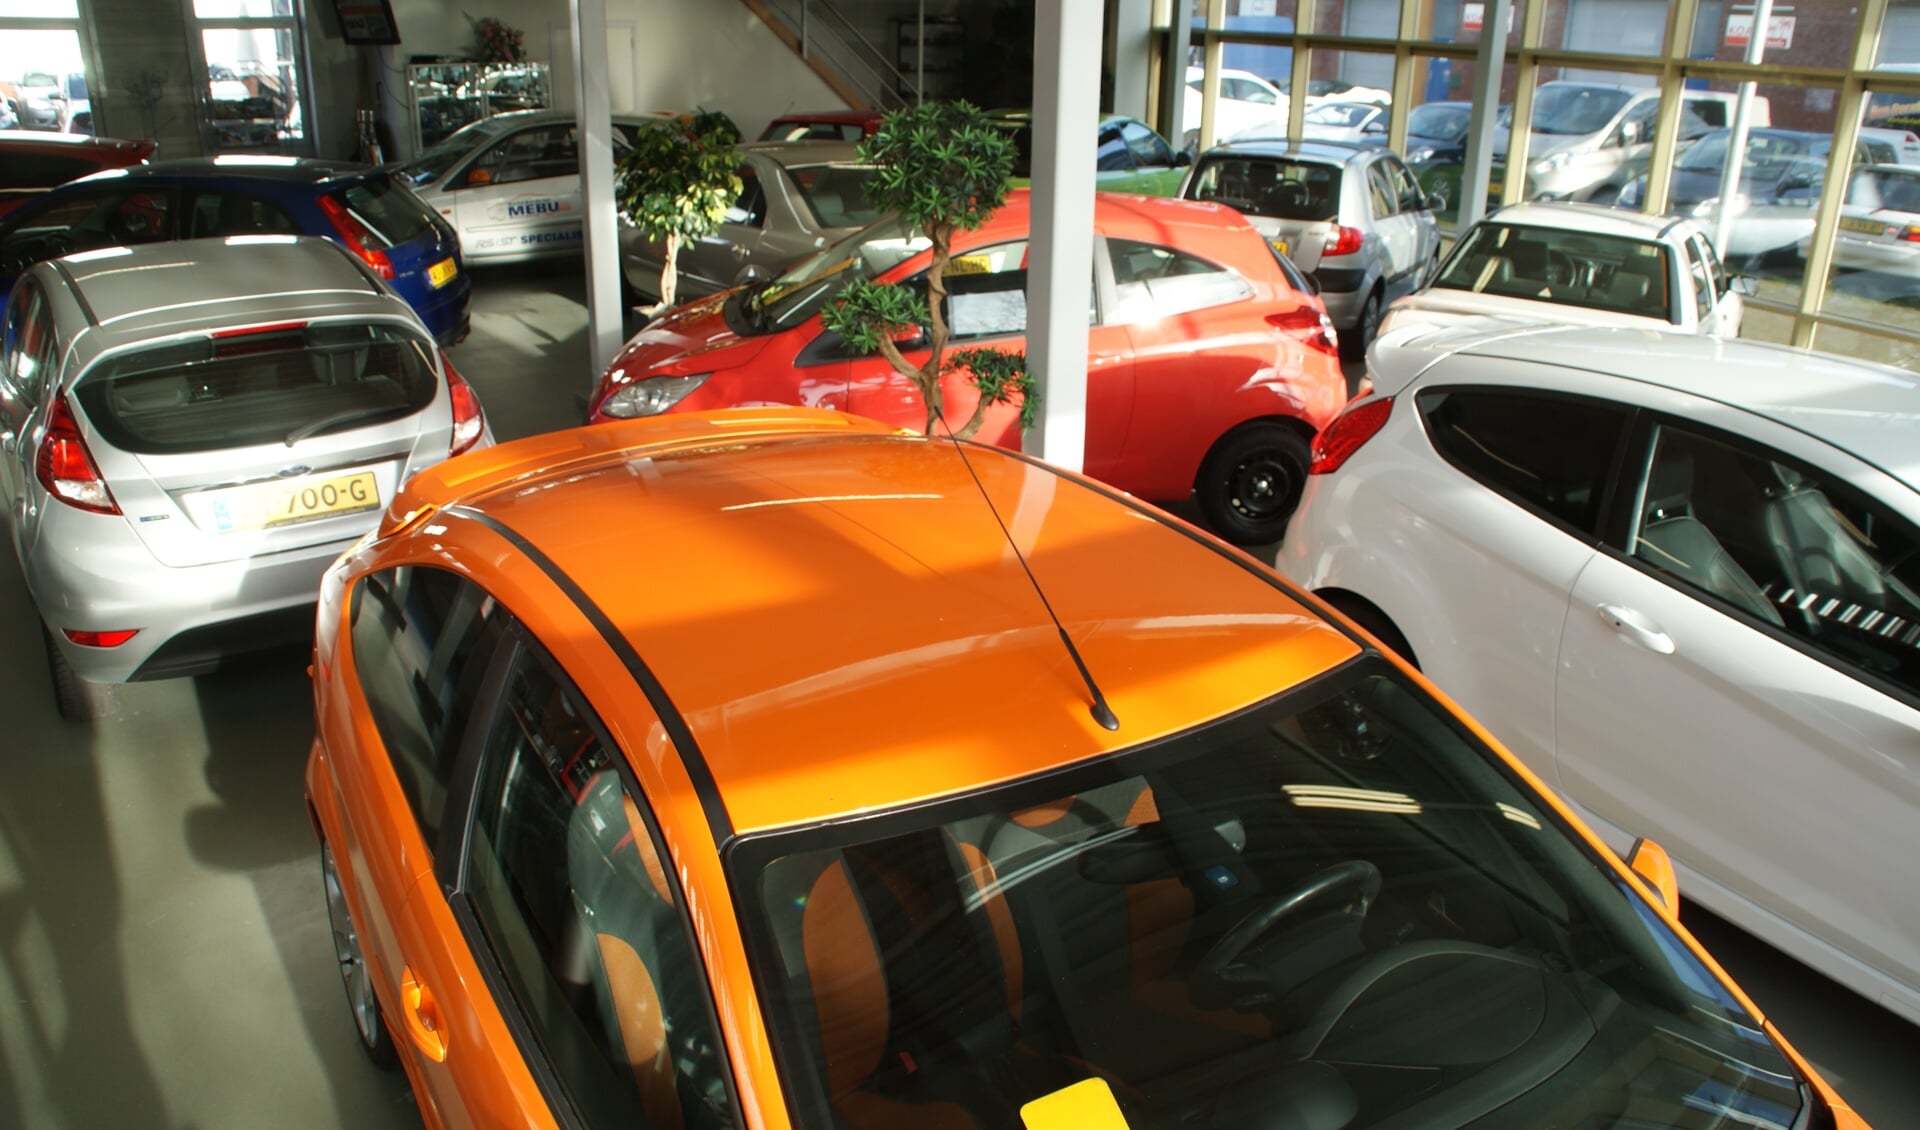 Een showroom vol jong gebruikte auto's bij Autobedrijf Mebu.